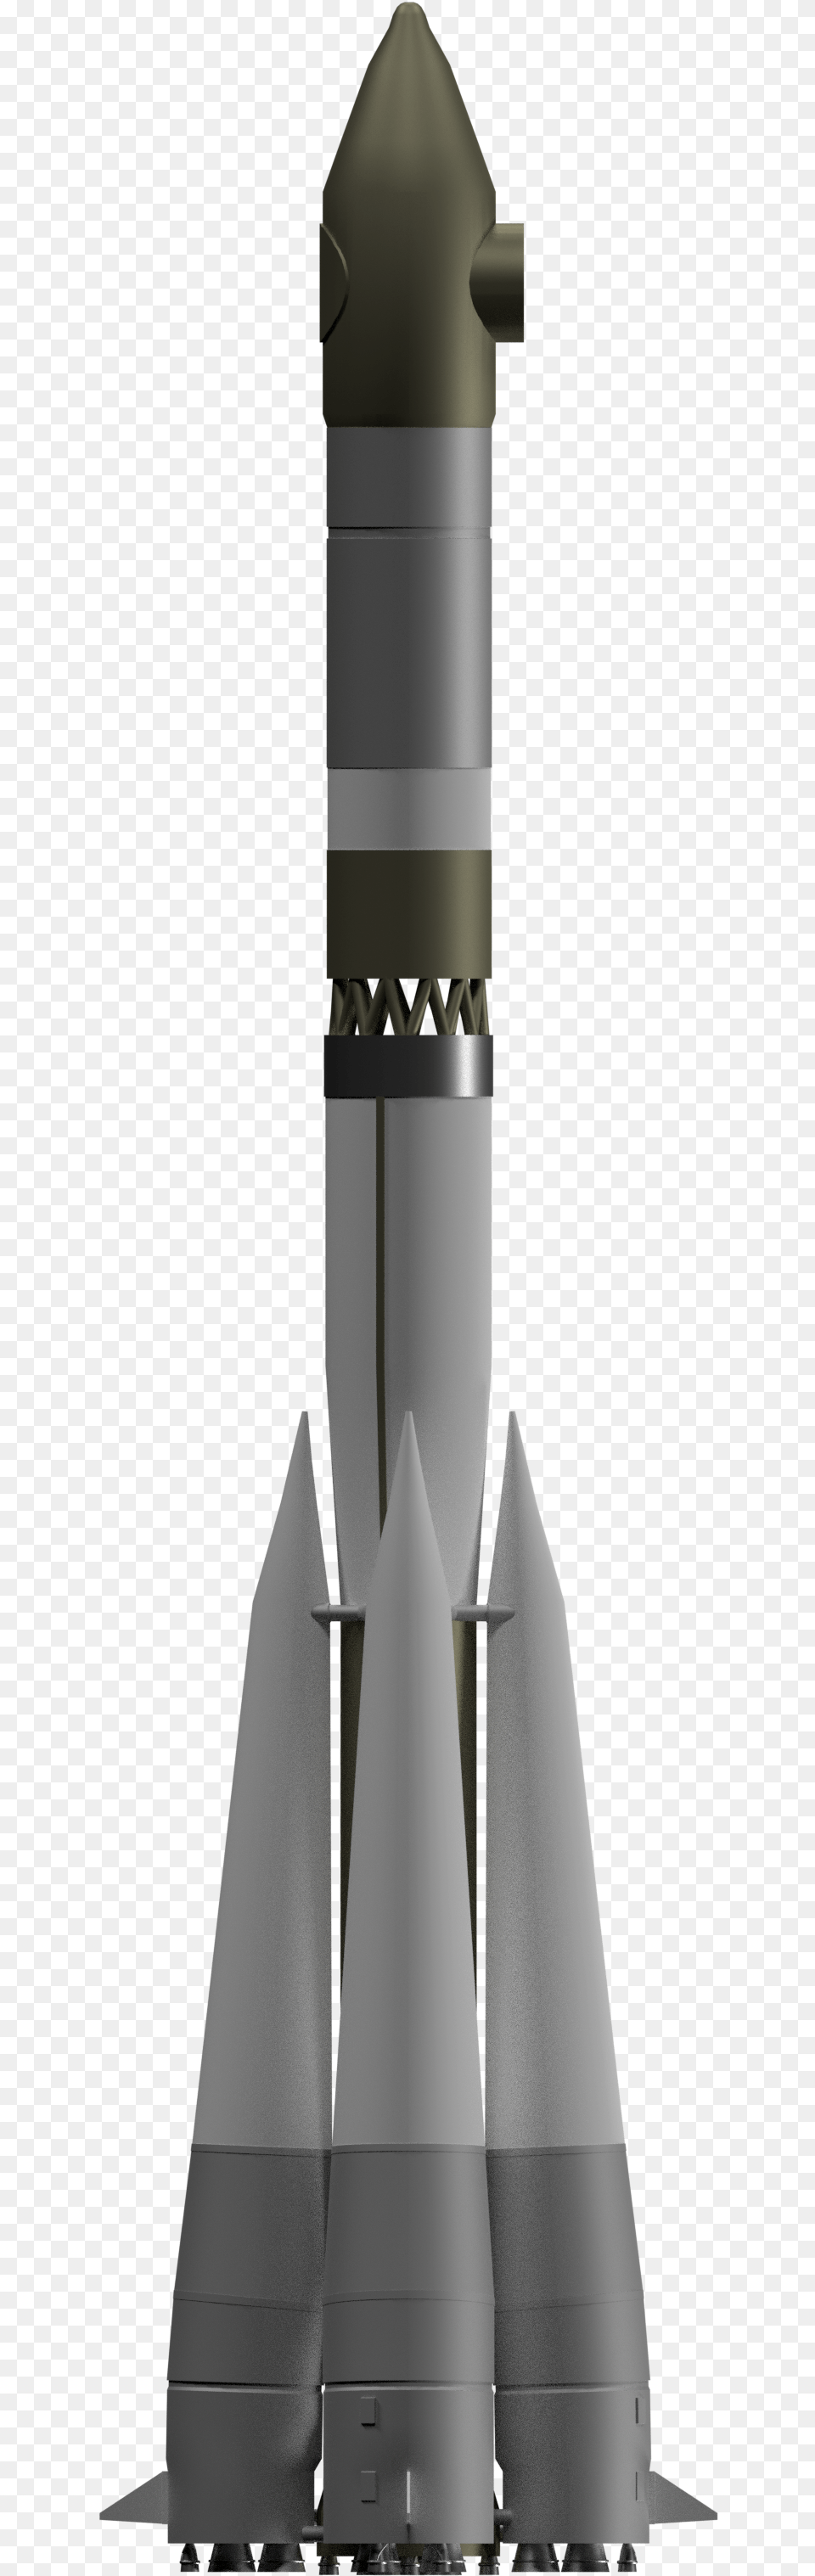 Voskhod Rocket, Weapon, Ammunition, Missile Free Png